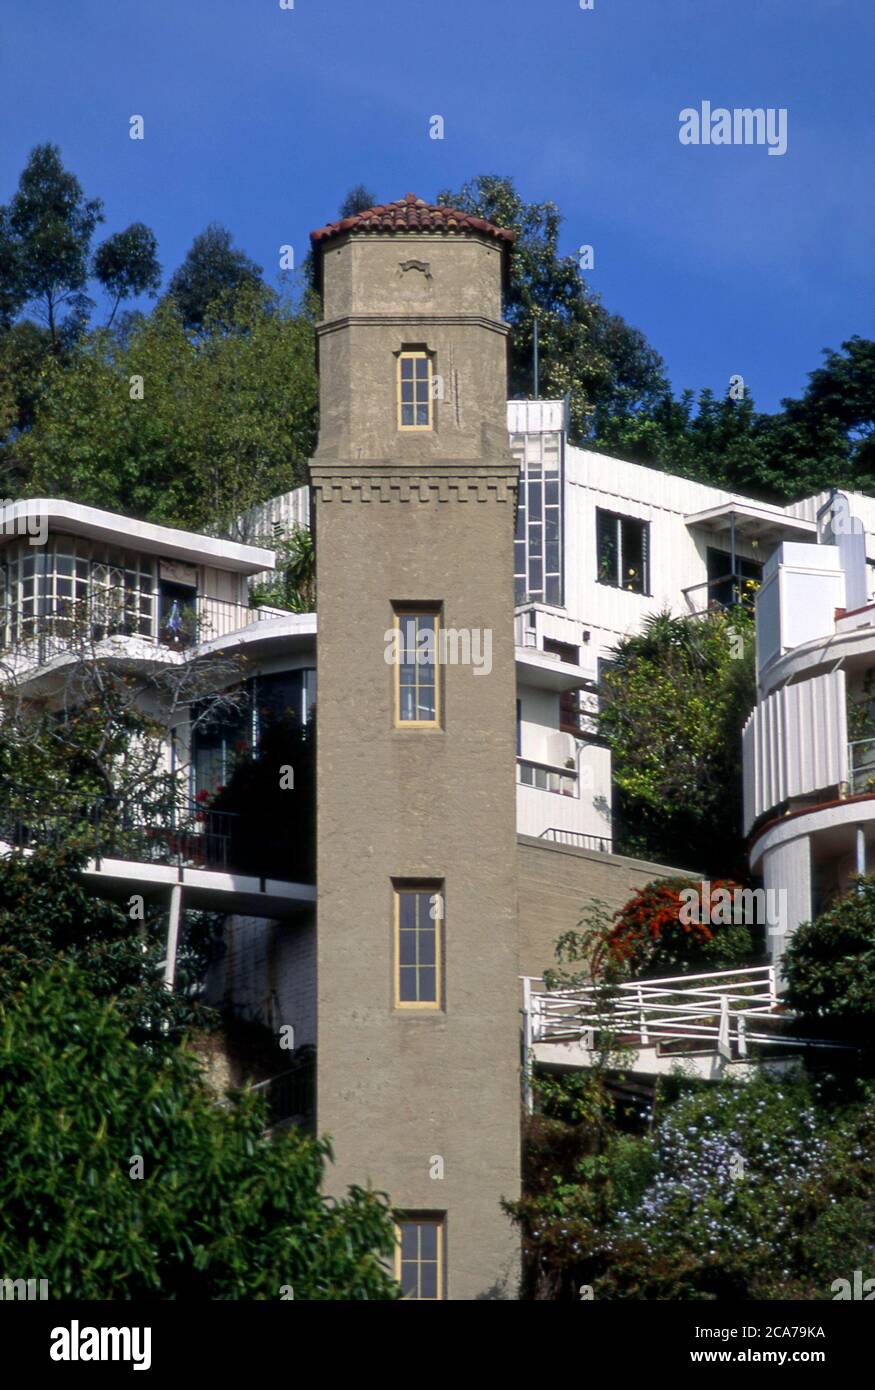 La arquitectura histórica del barrio High Tower en las colinas de Hollywood de los Angeles, CA Foto de stock